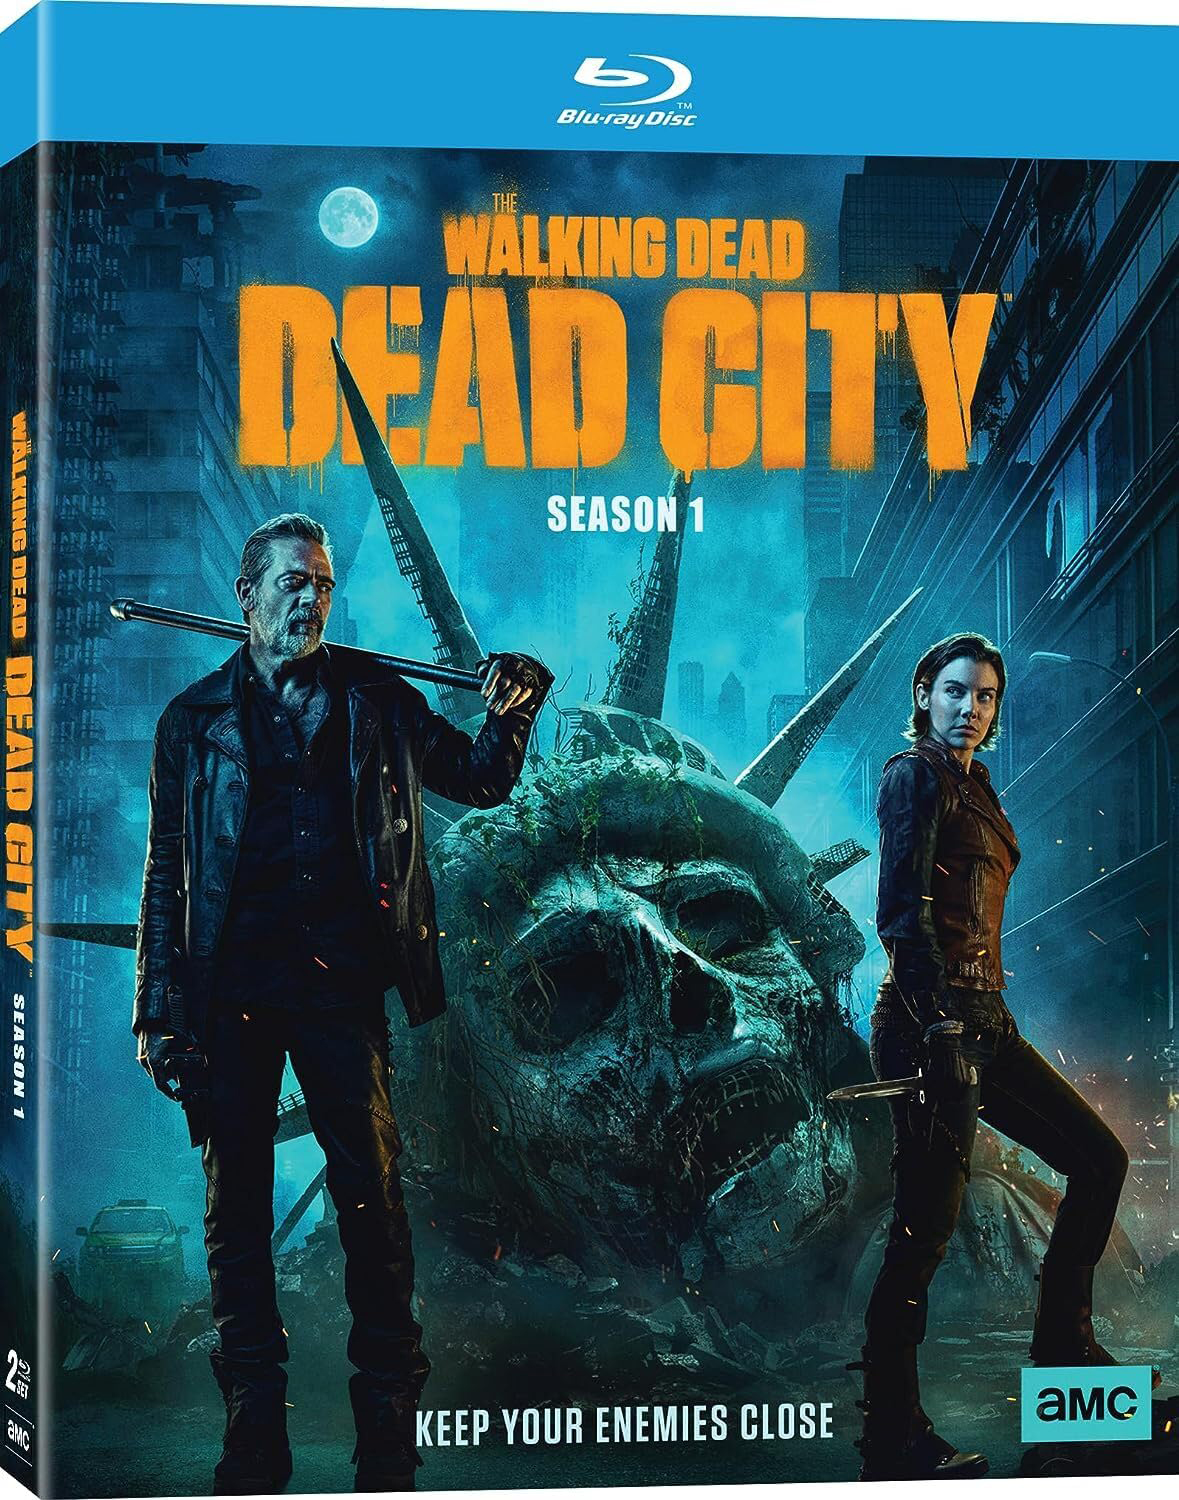 Evil Dead (DVD, 2013, Canadian) for sale online